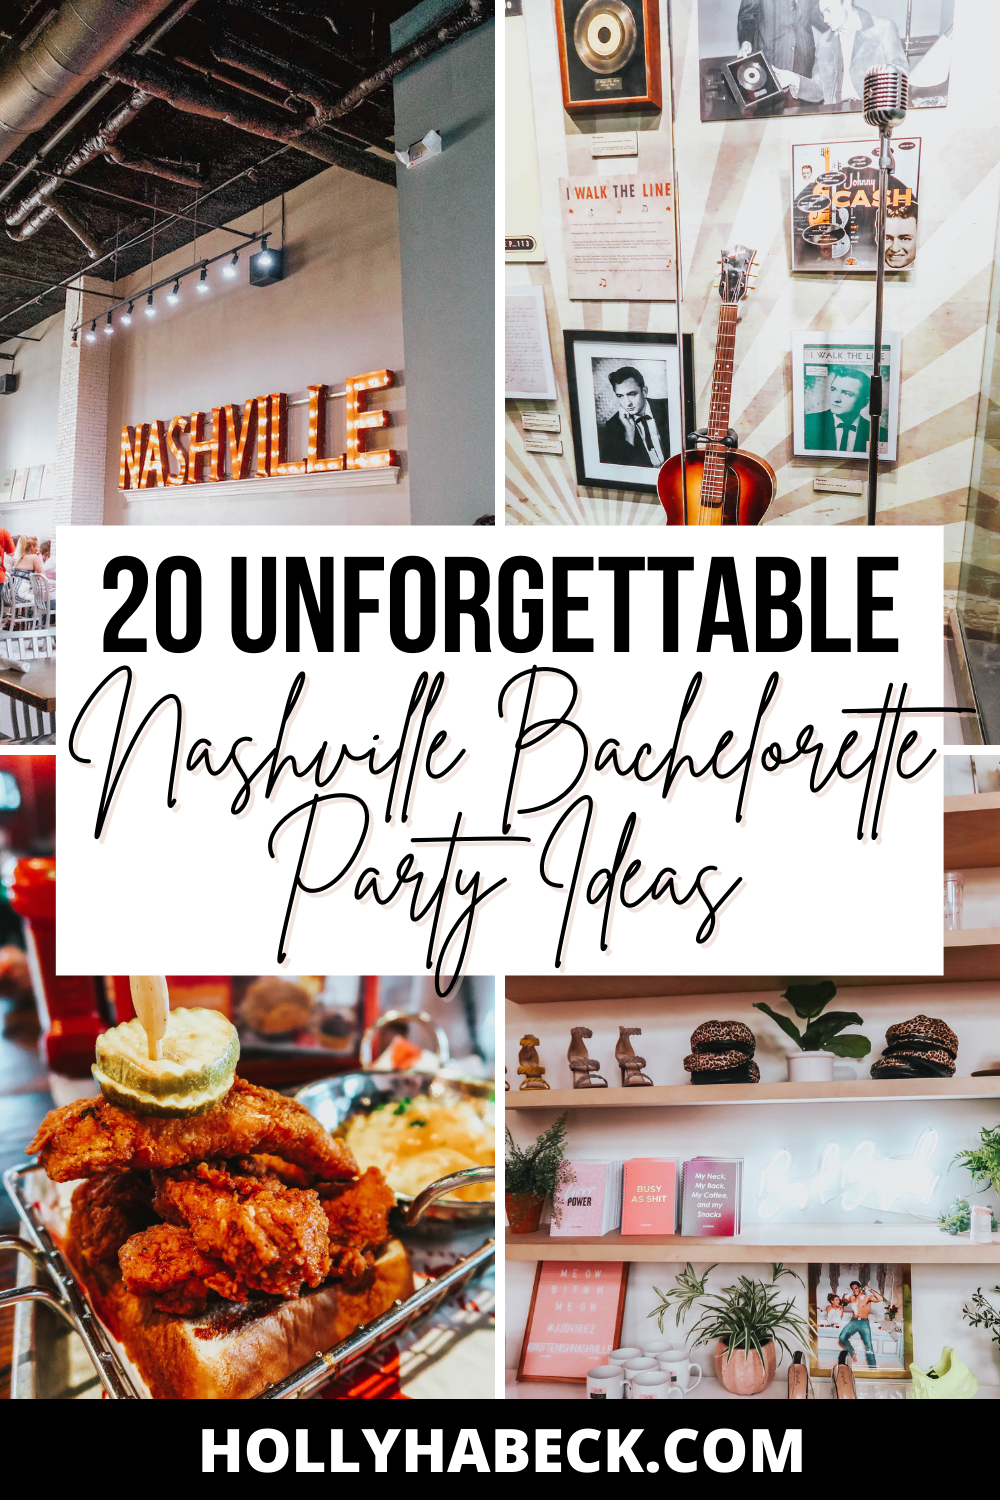 Nashville Bachelorette Party Ideas